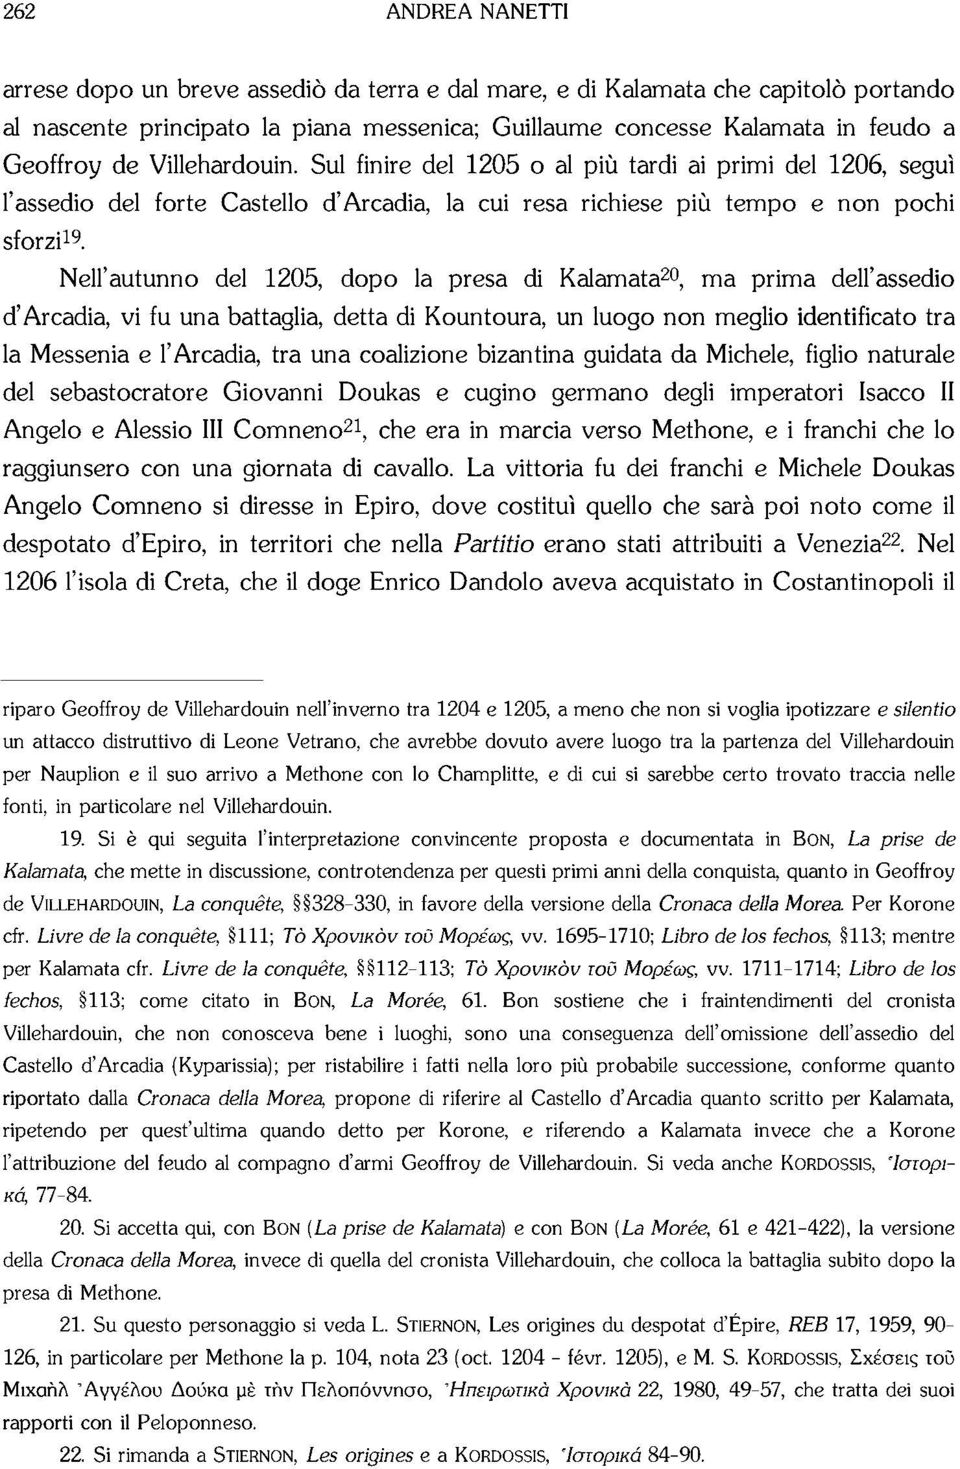 Nell'autunno del 1205, dopo la presa di Kalamata 20, ma prima dell'assedio d'arcadia, vi fu una battaglia, detta di Kountoura, un luogo non meglio identificato tra la Messenia e l'arcadia, tra una